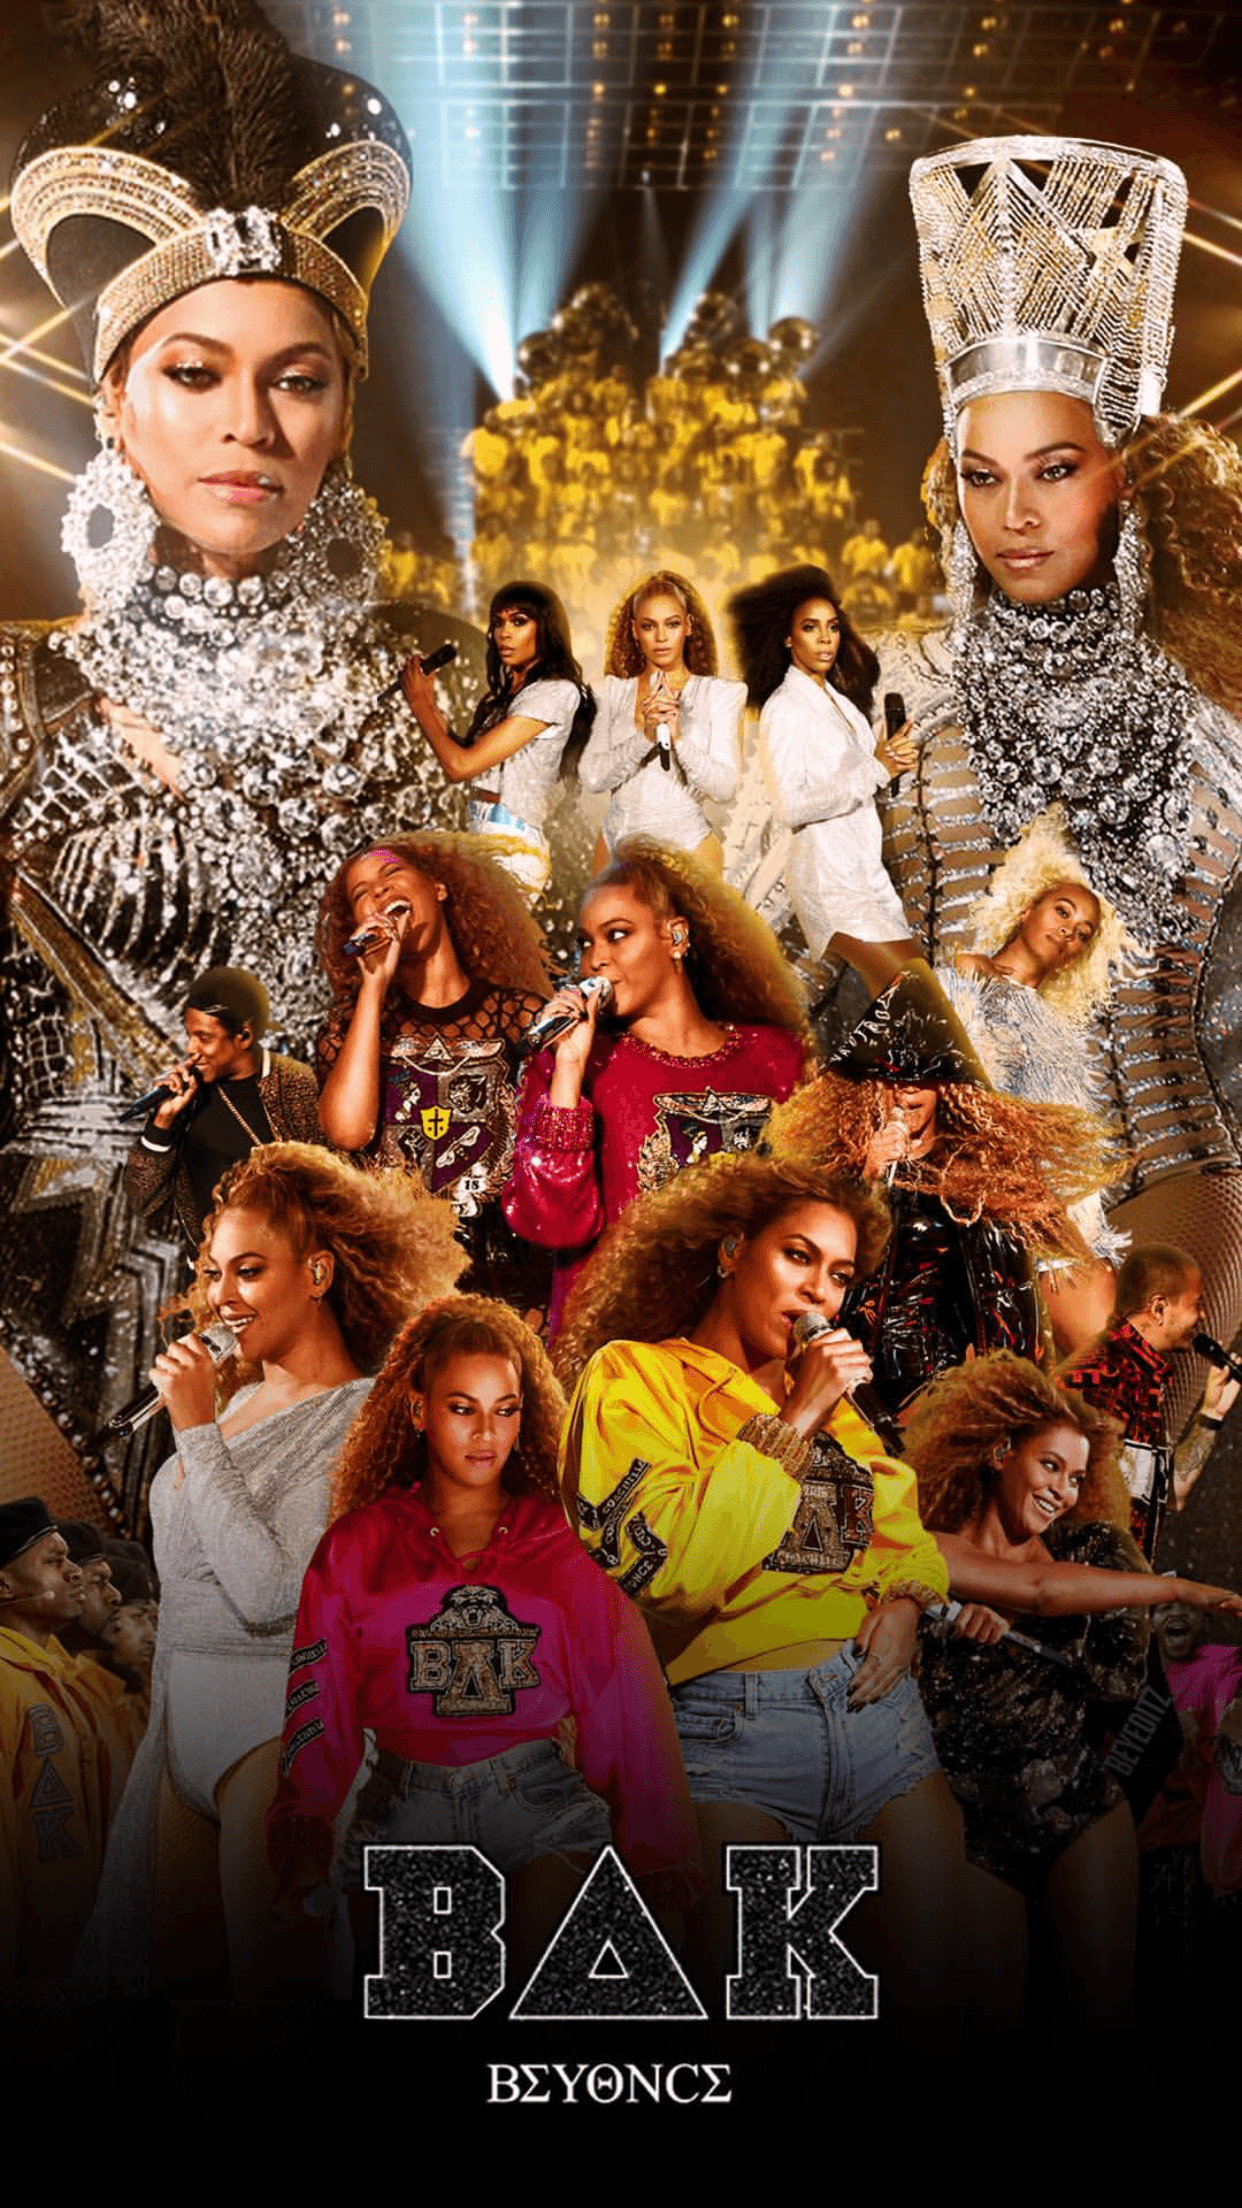 Beyoncé Coachella Wallpapers - Wallpaper Cave